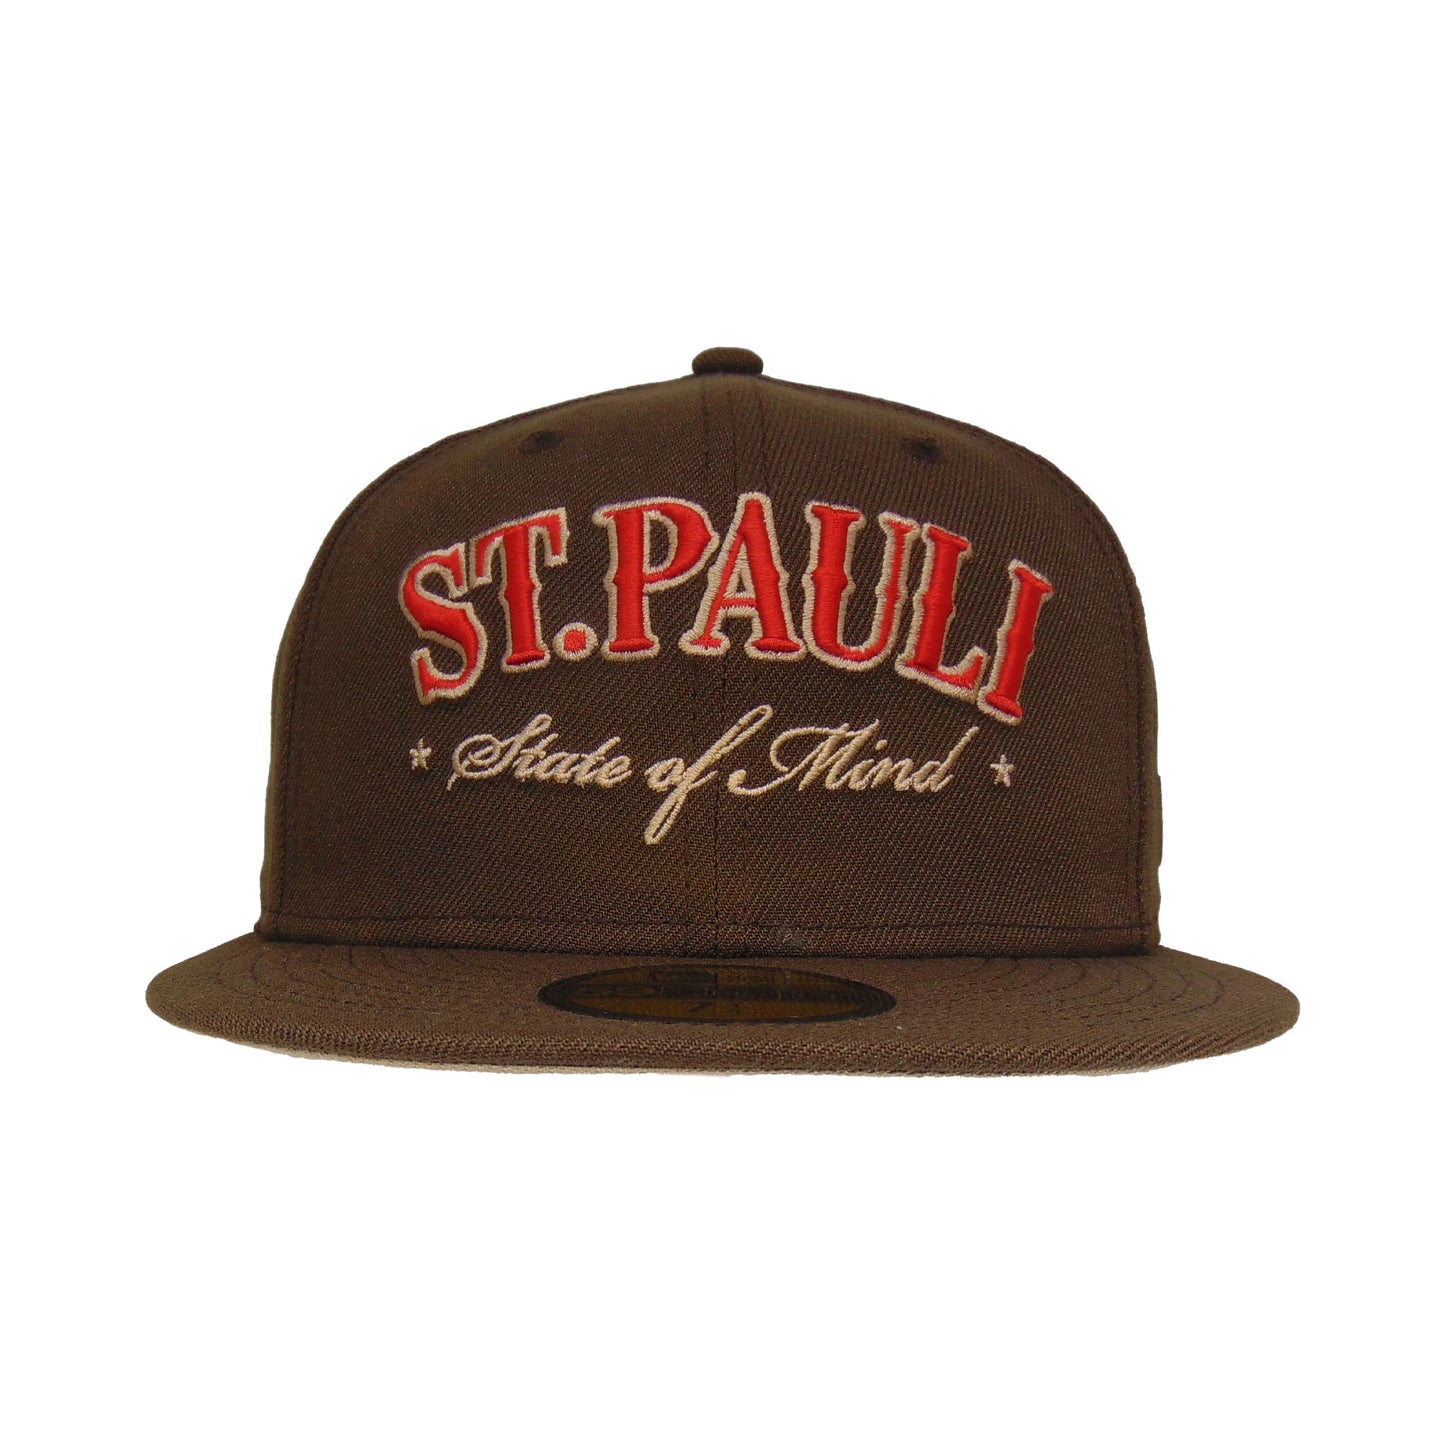 St. Pauli JF Exclusive New Era 59FIFTY Cap Walnut Brown